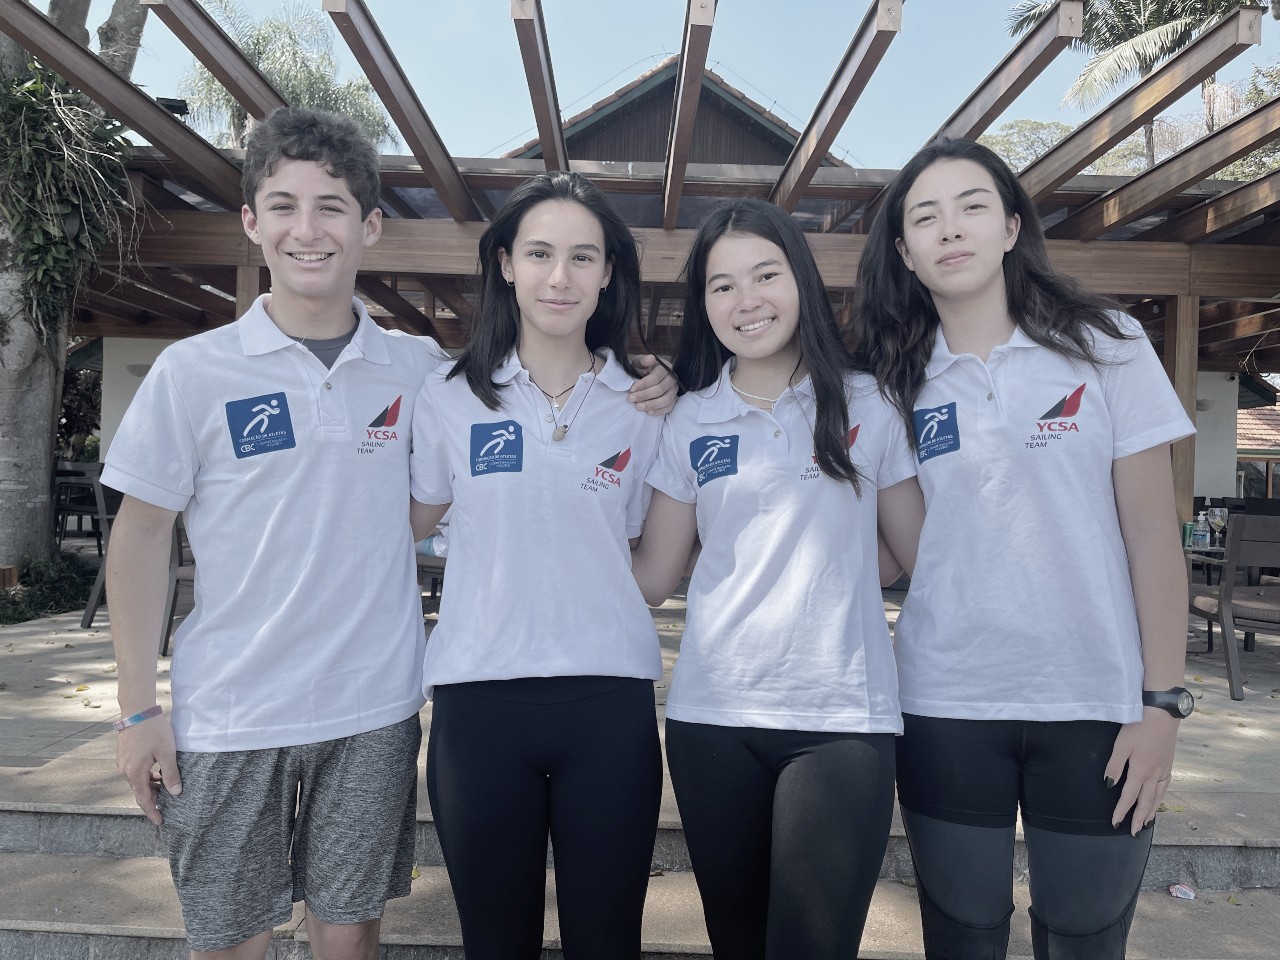 YCSA promove clínica de vela jovem com campeões olímpicos, pan-americanos e mundiais